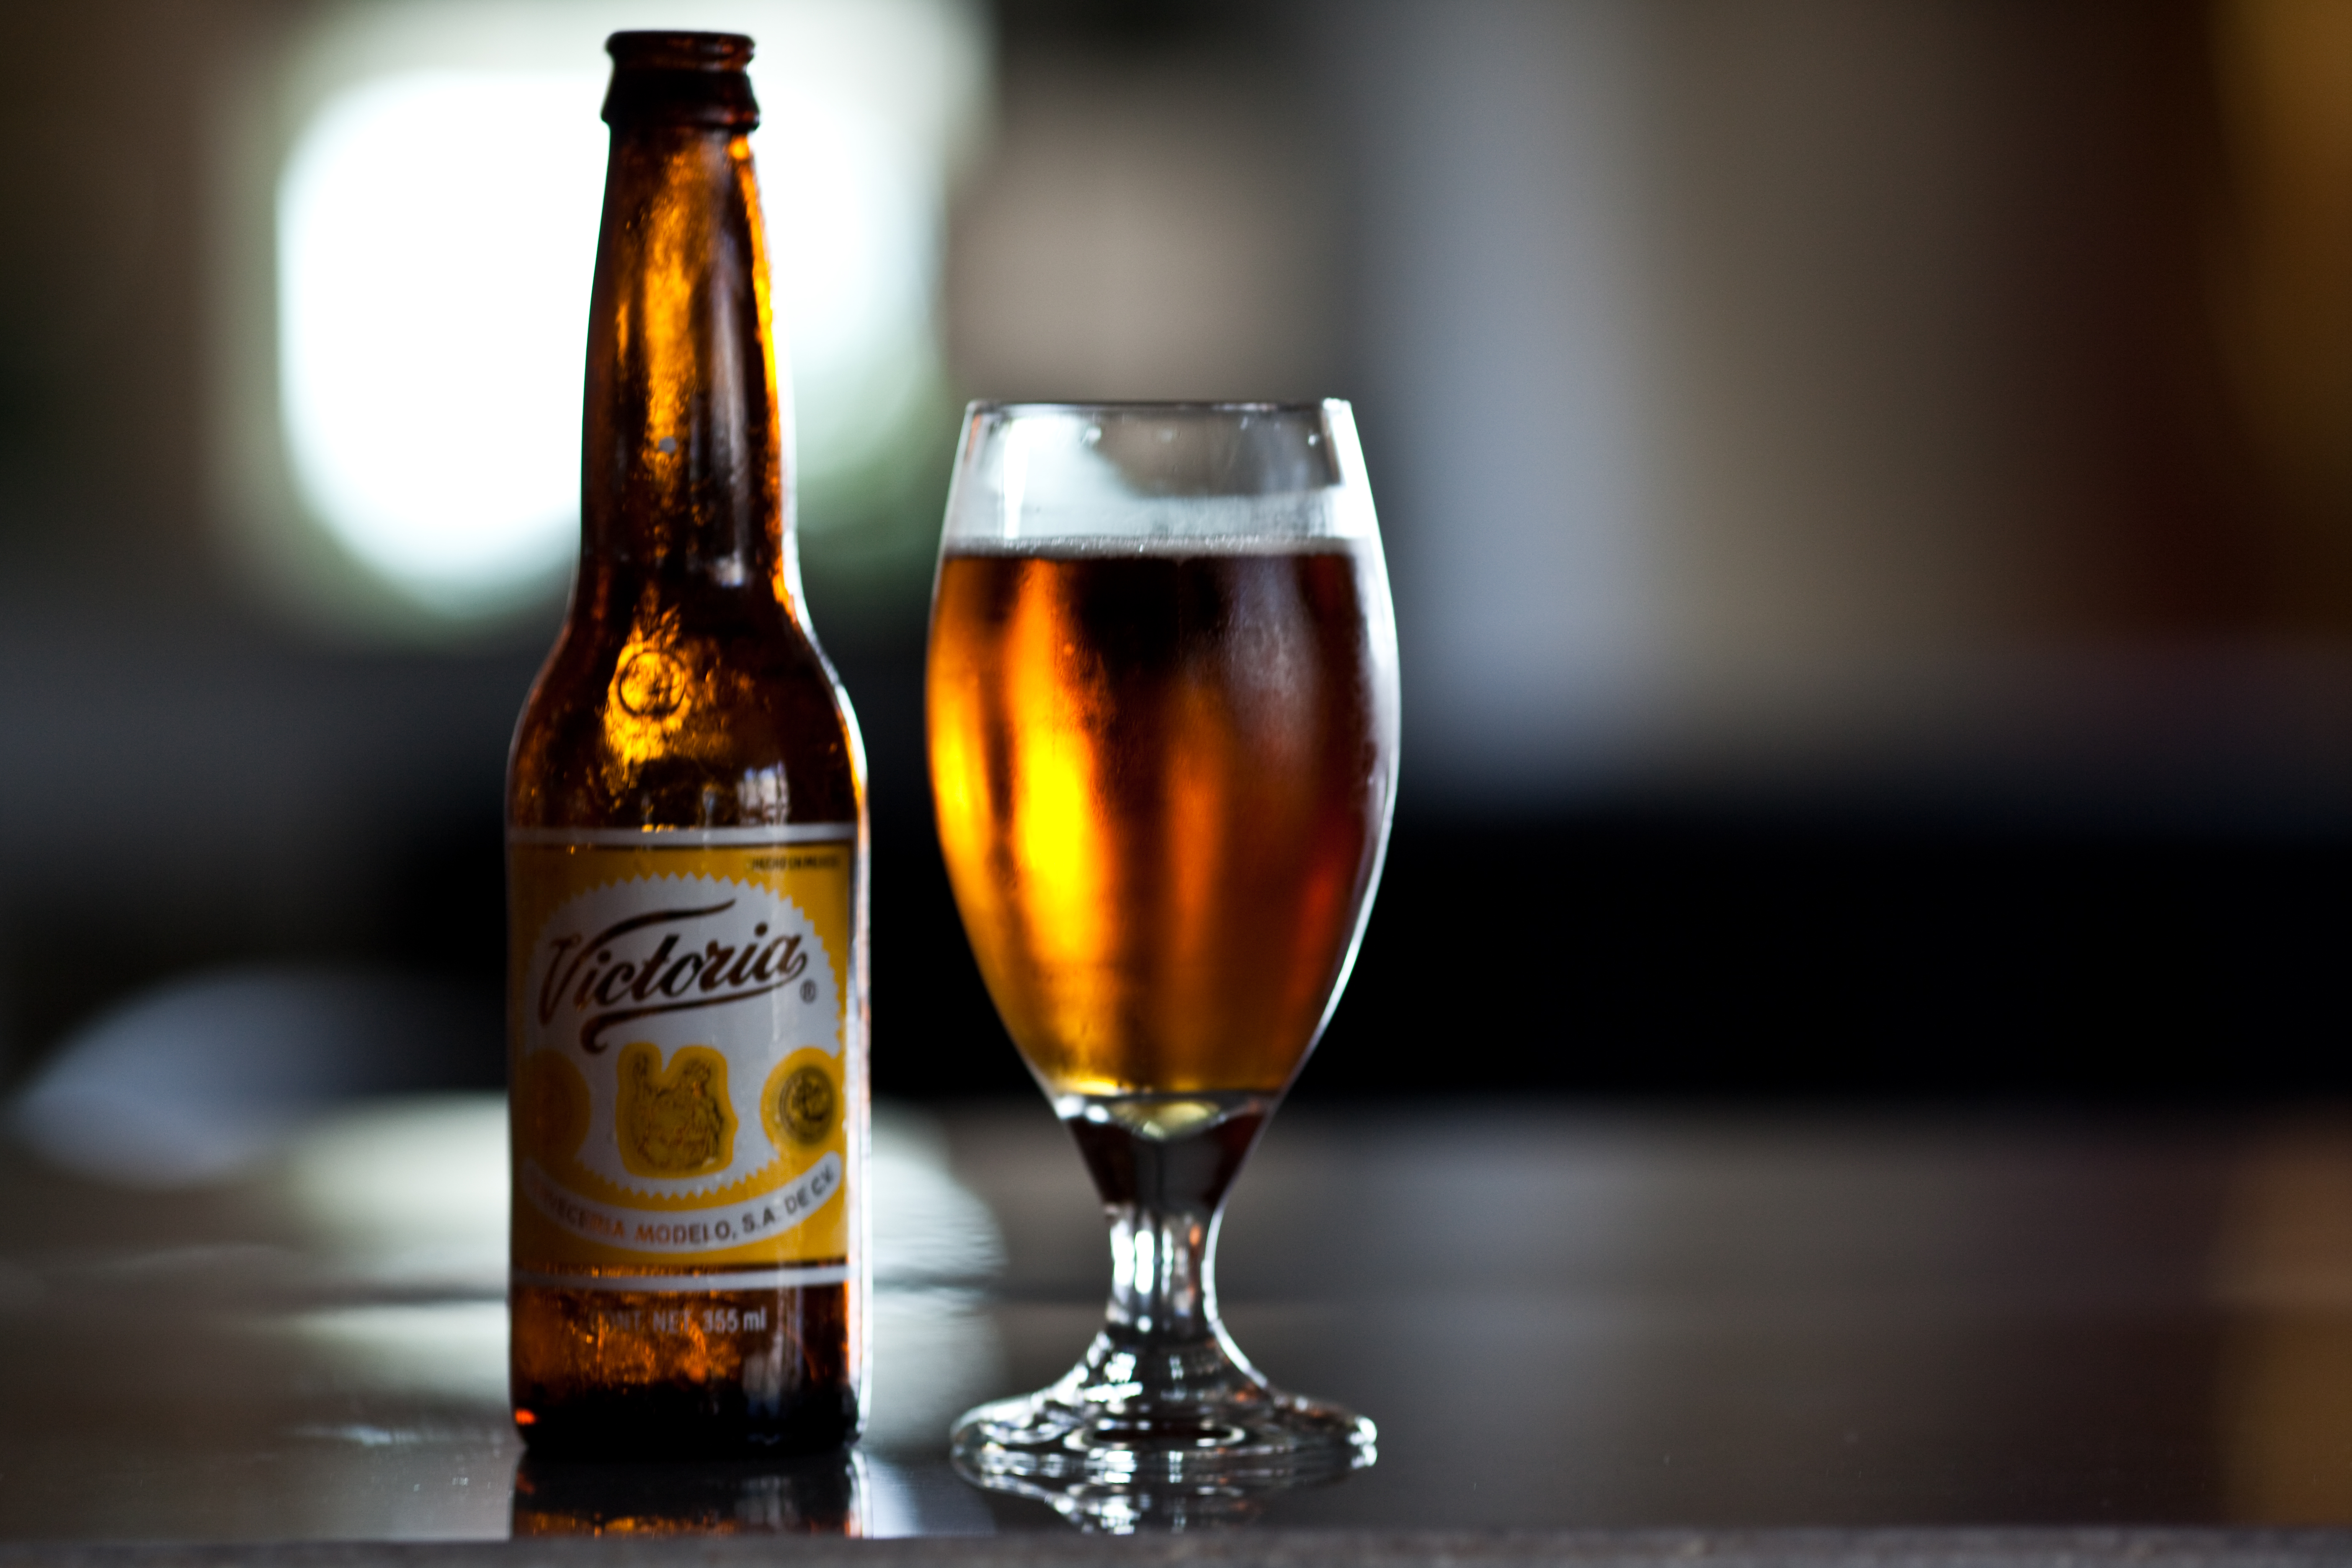  Cerveza Victoria busca llegar a los ‘millenials’